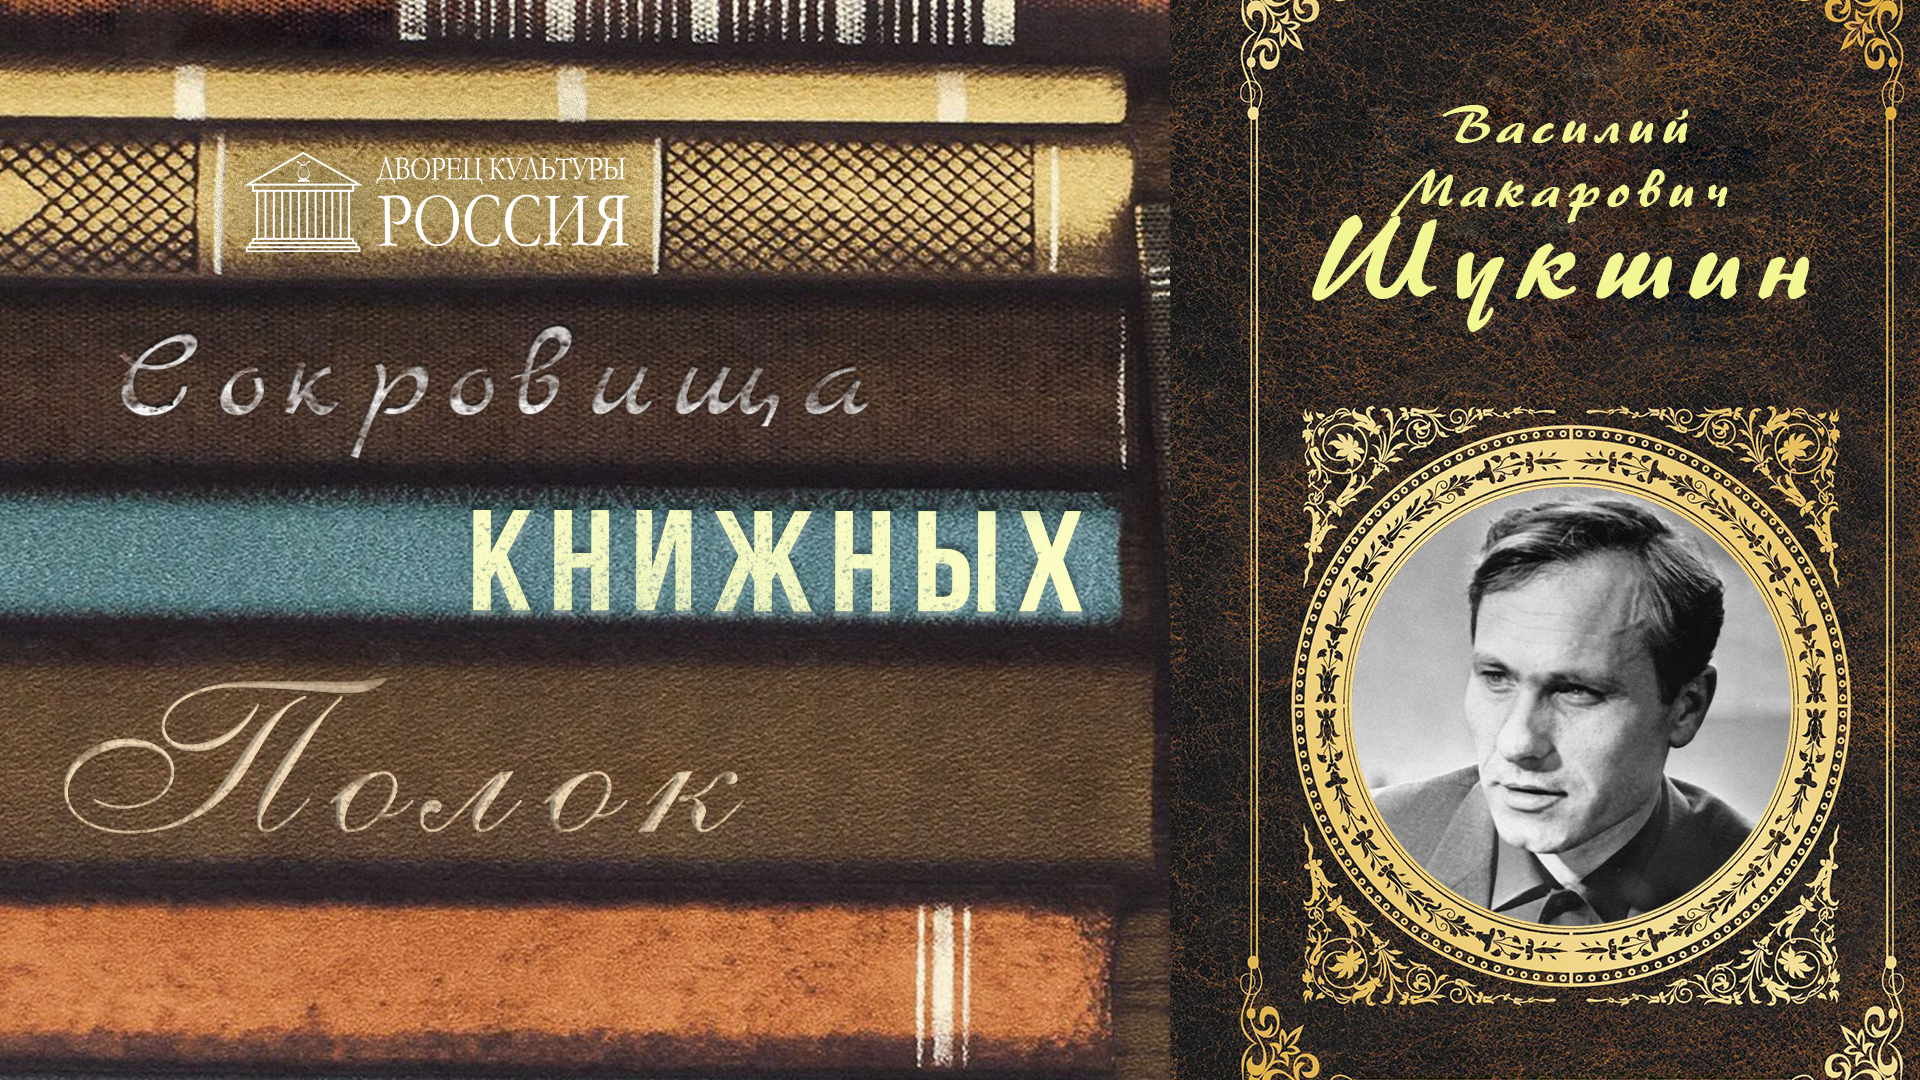 Онлайн-рубрика «Сокровища книжных полок» — «Василий Шукшин»